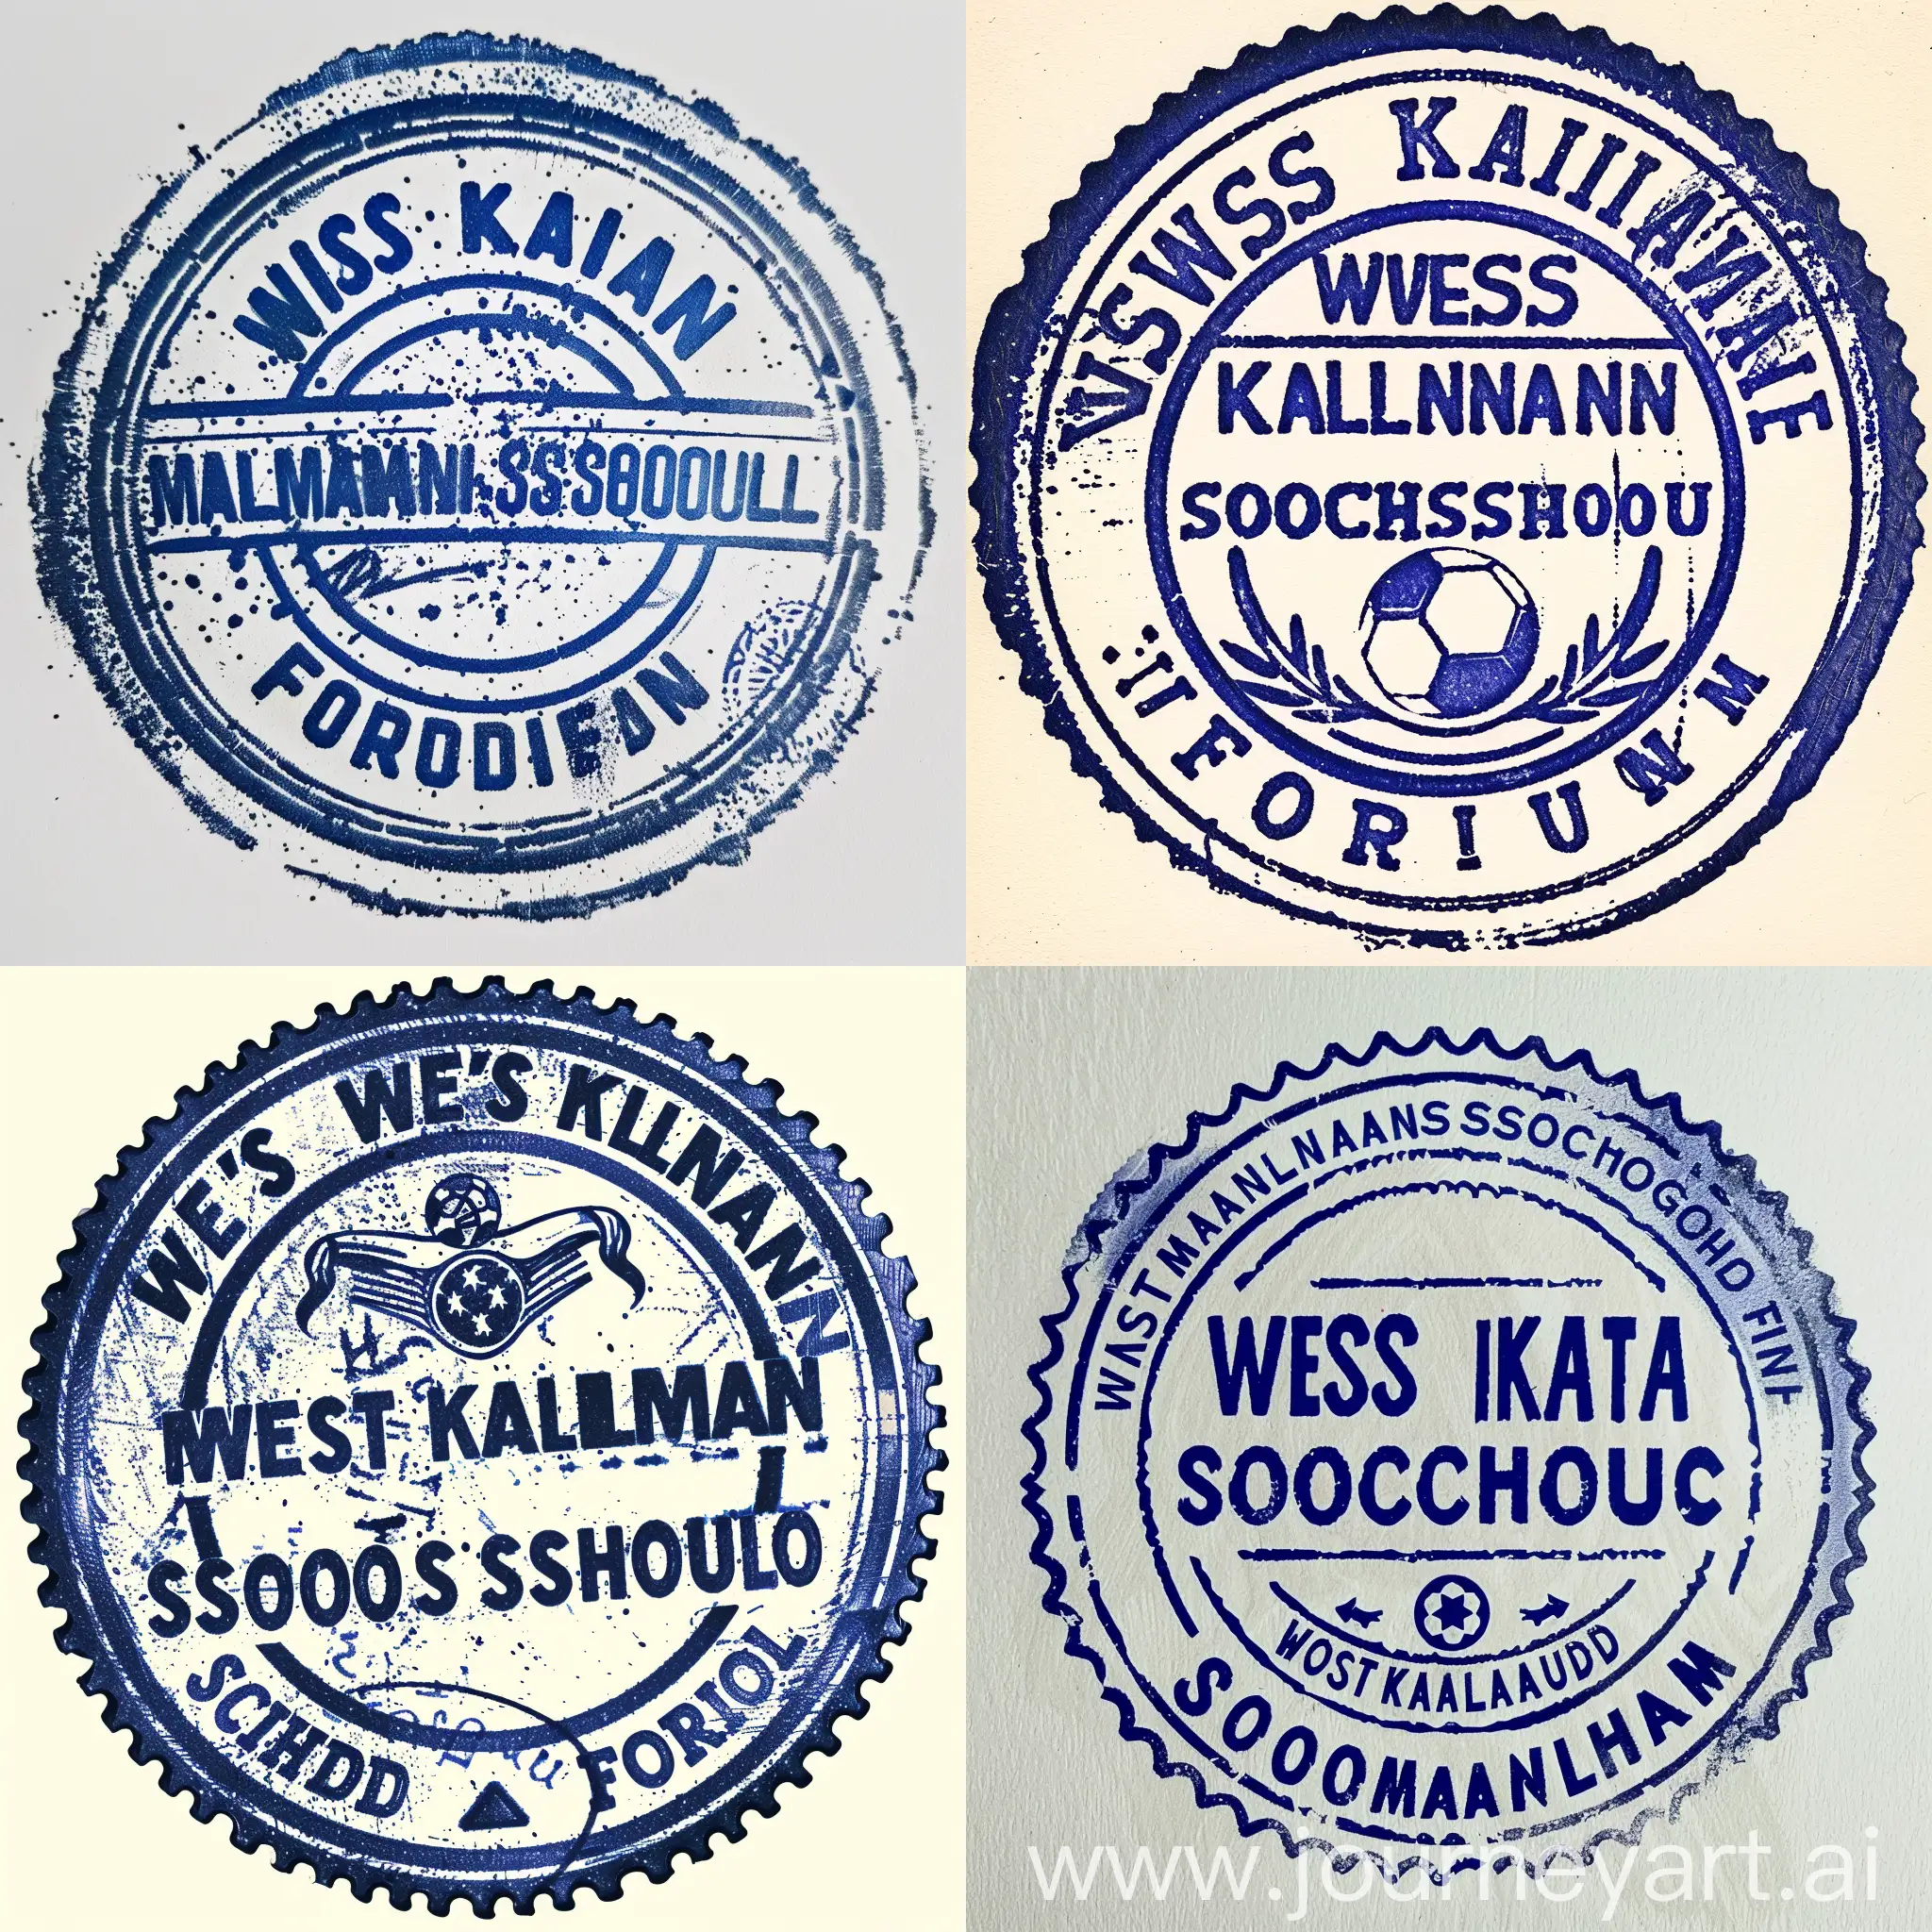 Elegant-West-Kalimantan-Soccer-School-Forum-Stamp-Design-in-Blue-Ink